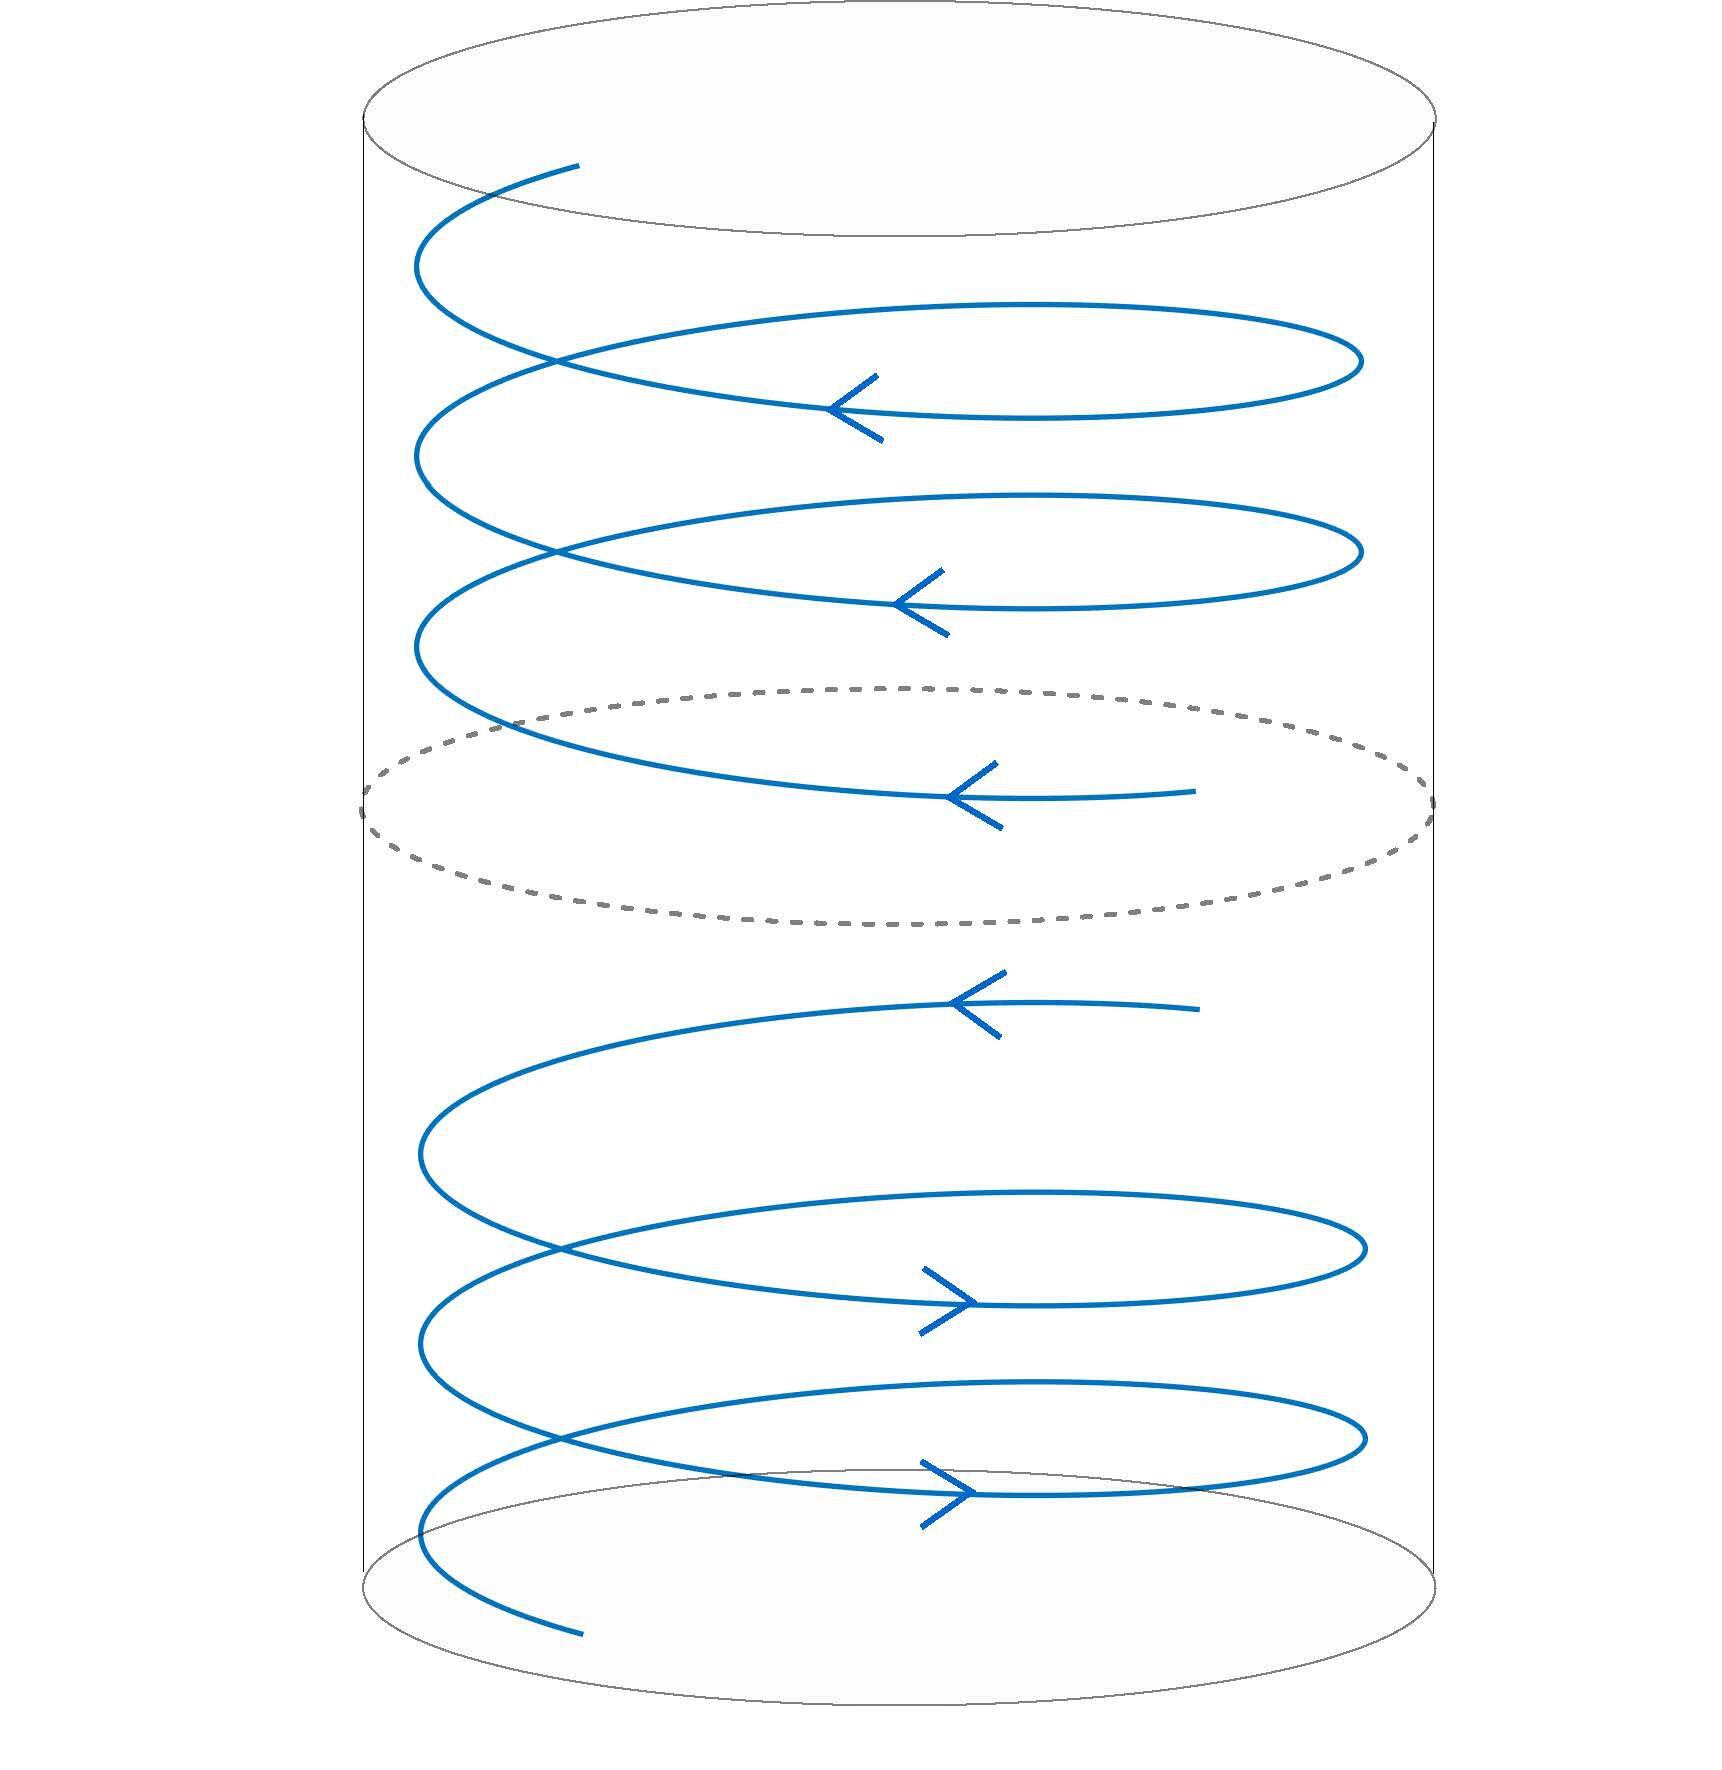 Representación de la simulación de Luo y Hou, en la que el fluido se desplaza dentro de un cilindro.